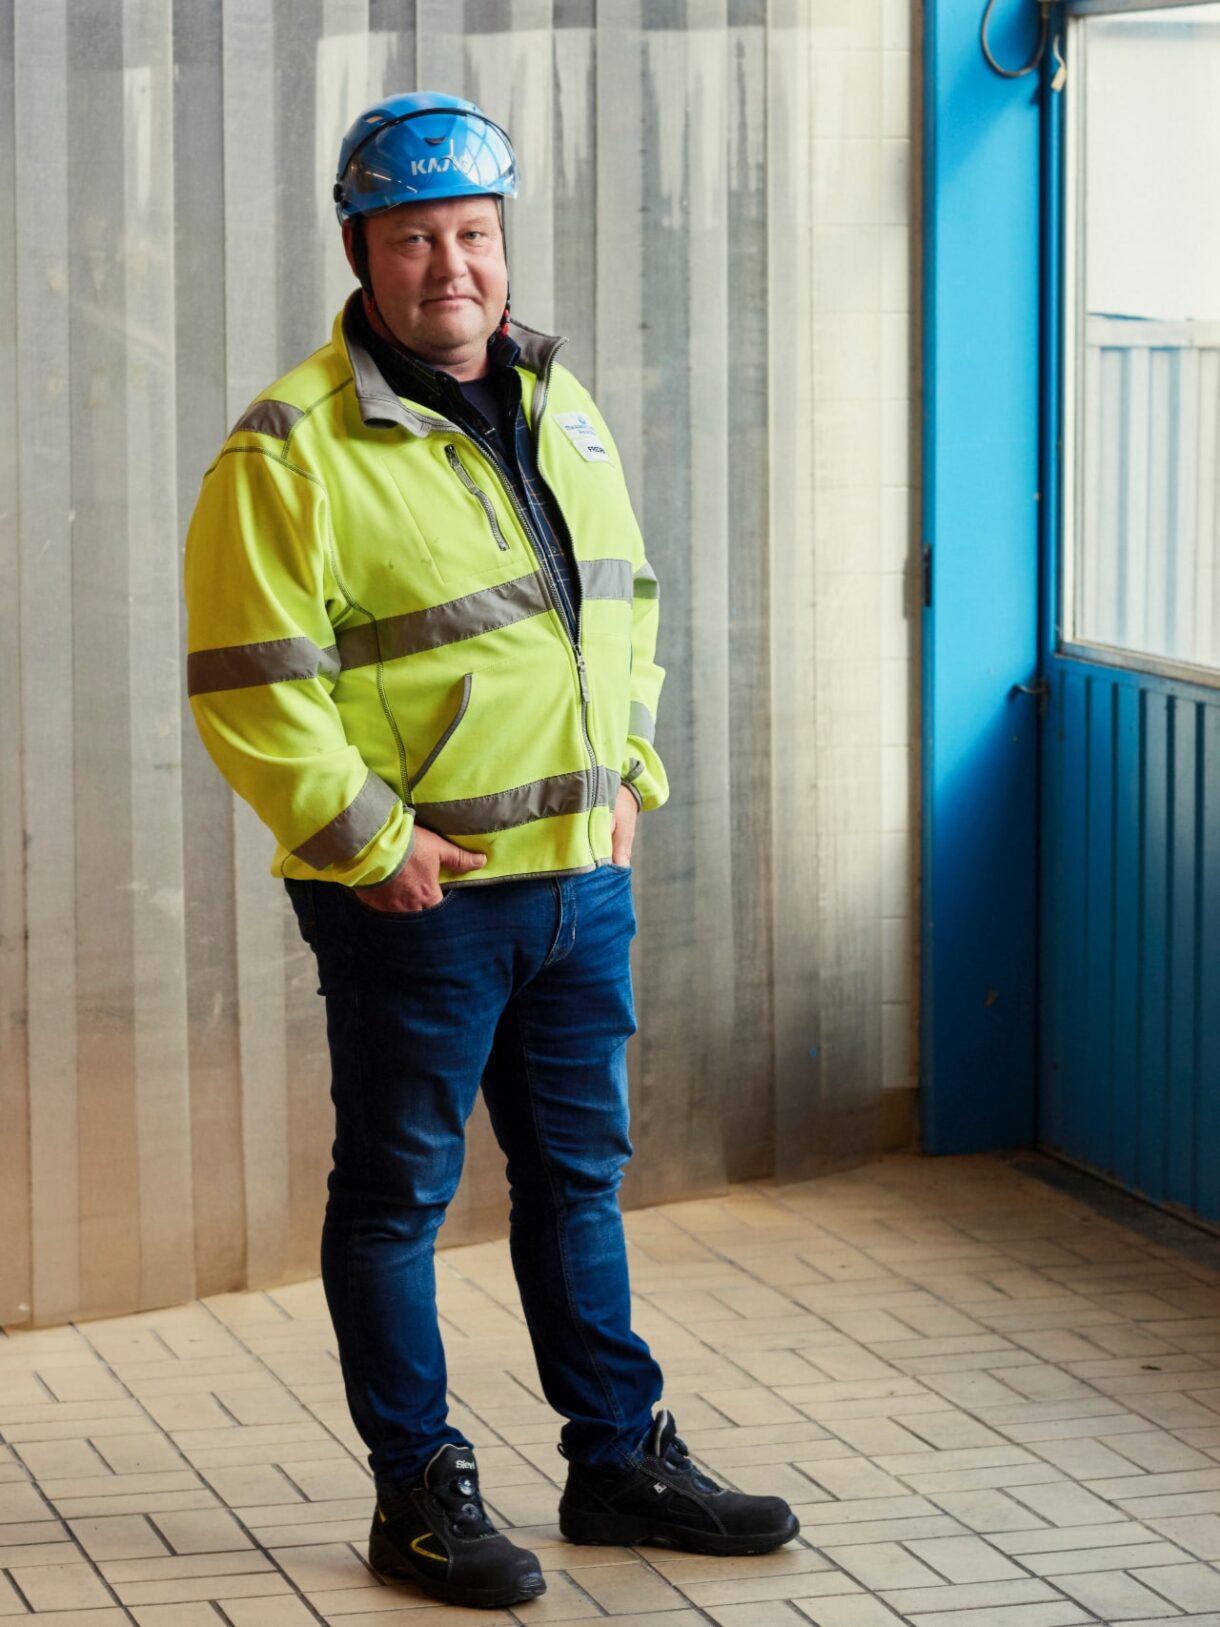 Fredrik Åfeldt, Manager Technical Development at Absolut